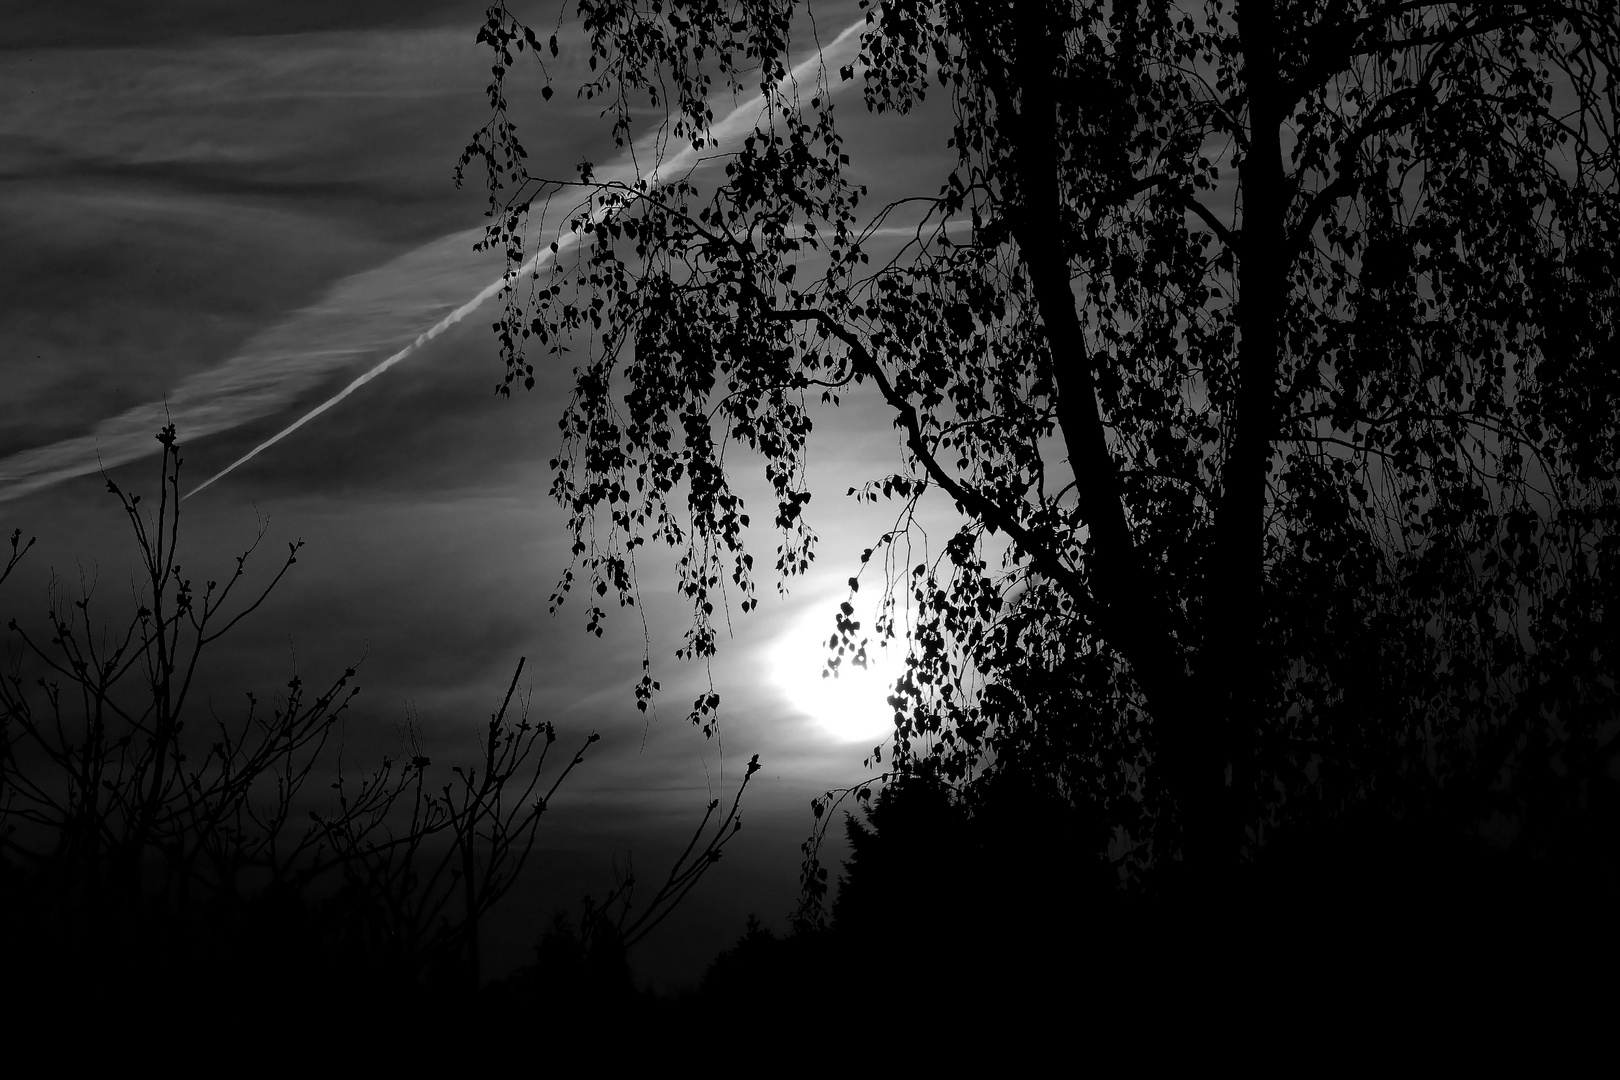 Sonnenuntergang in schwarz/weiß